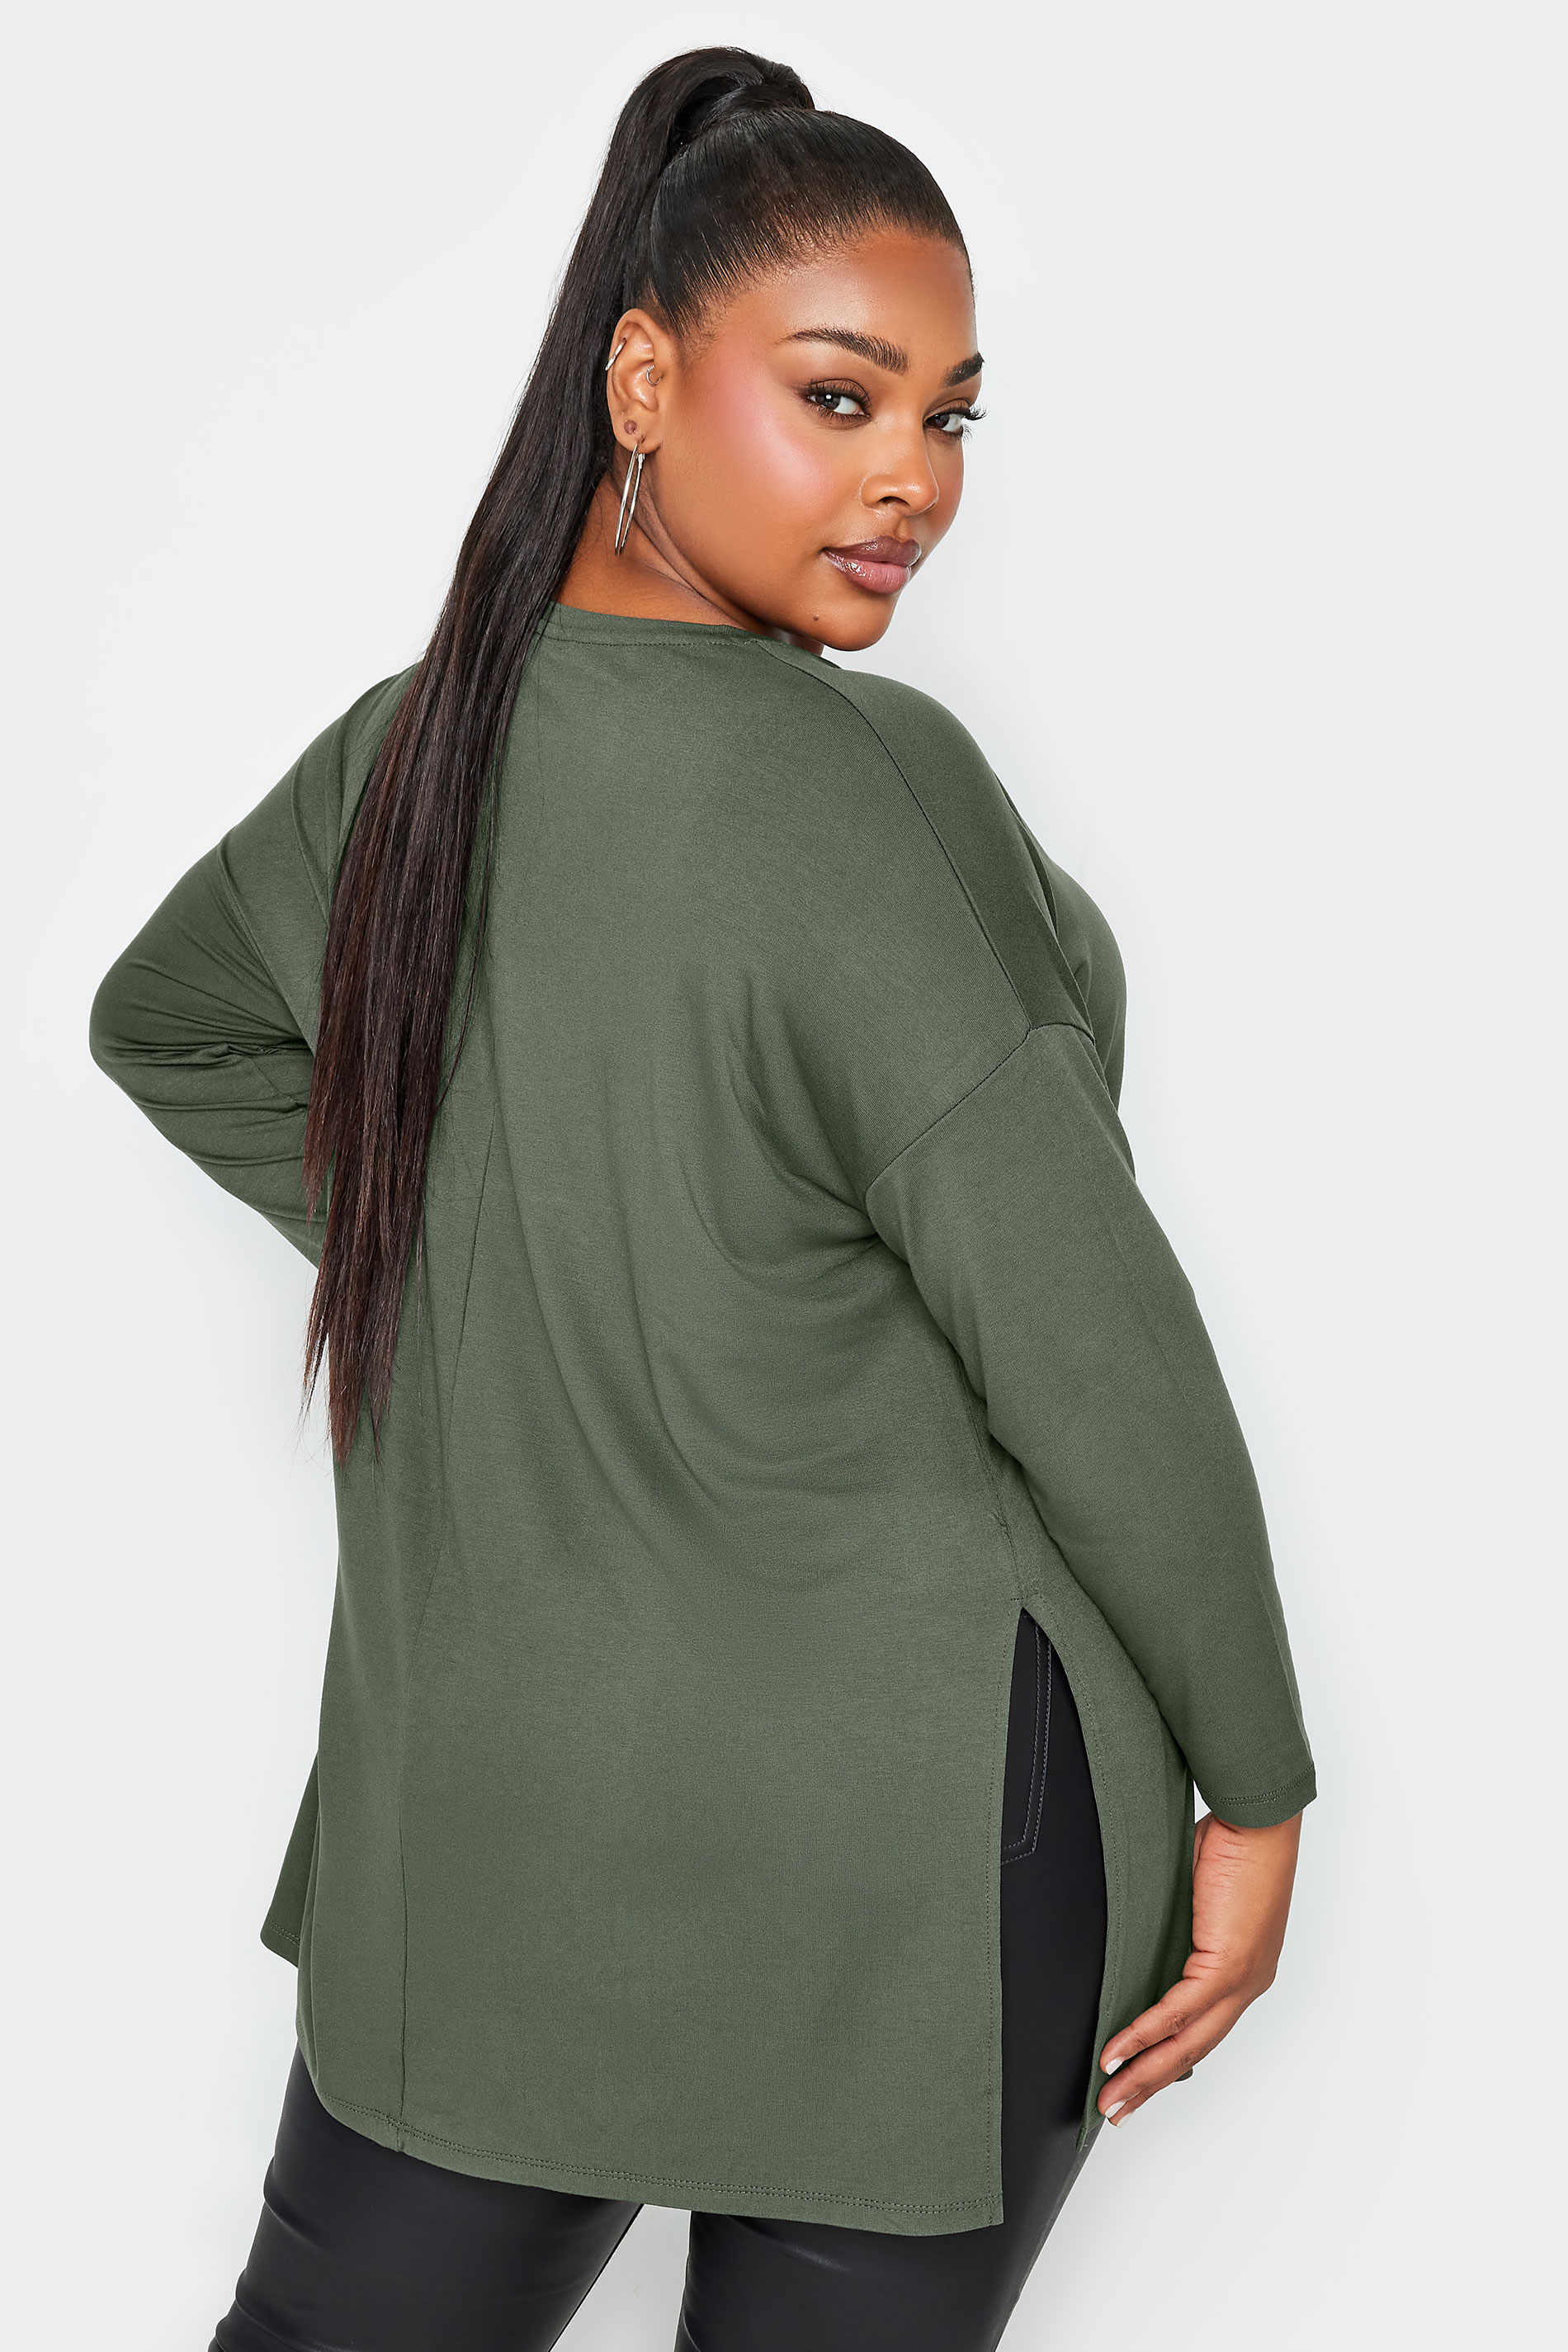 YOURS Plus Size Khaki Green Oversized Long Sleeve T-Shirt | Yours Clothing 3